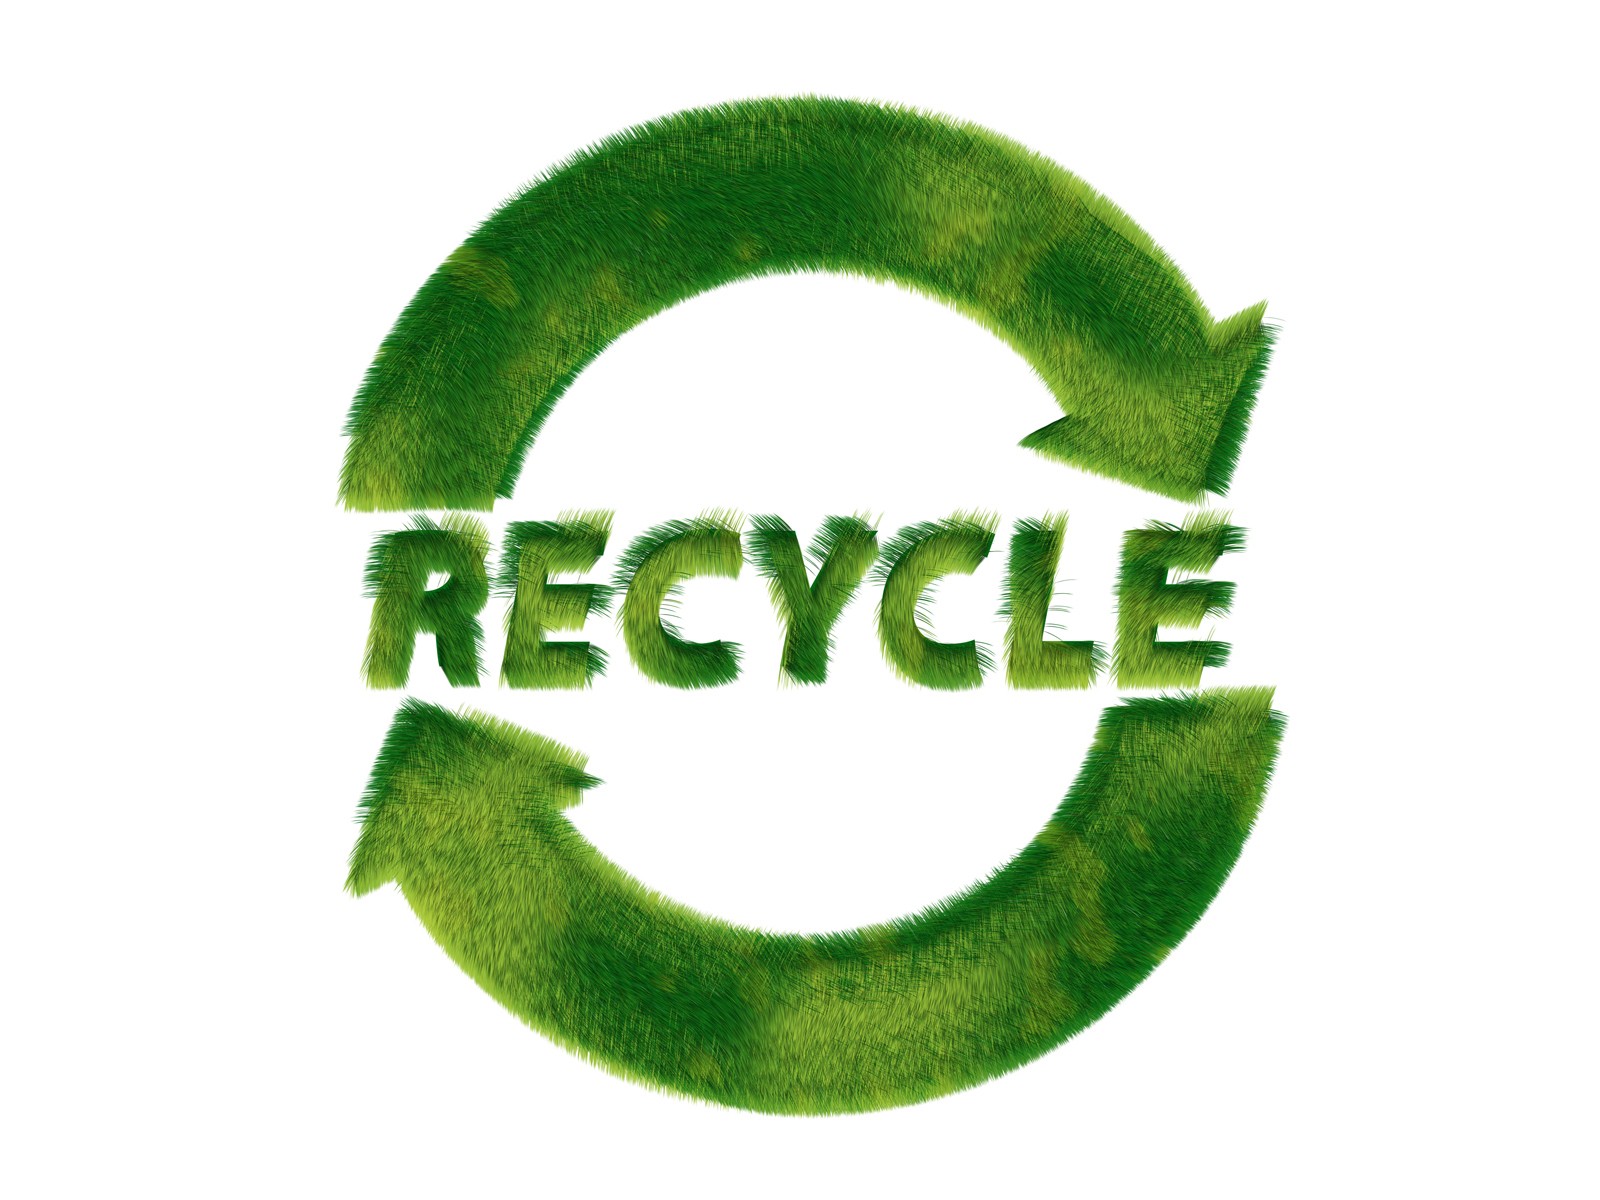 壁纸1600x1200 Recycle Sign Recycle Symbols 1920 1200壁纸 绿色和平环保标志-循环利用壁纸 绿色和平环保标志-循环利用图片 绿色和平环保标志-循环利用素材 插画壁纸 插画图库 插画图片素材桌面壁纸